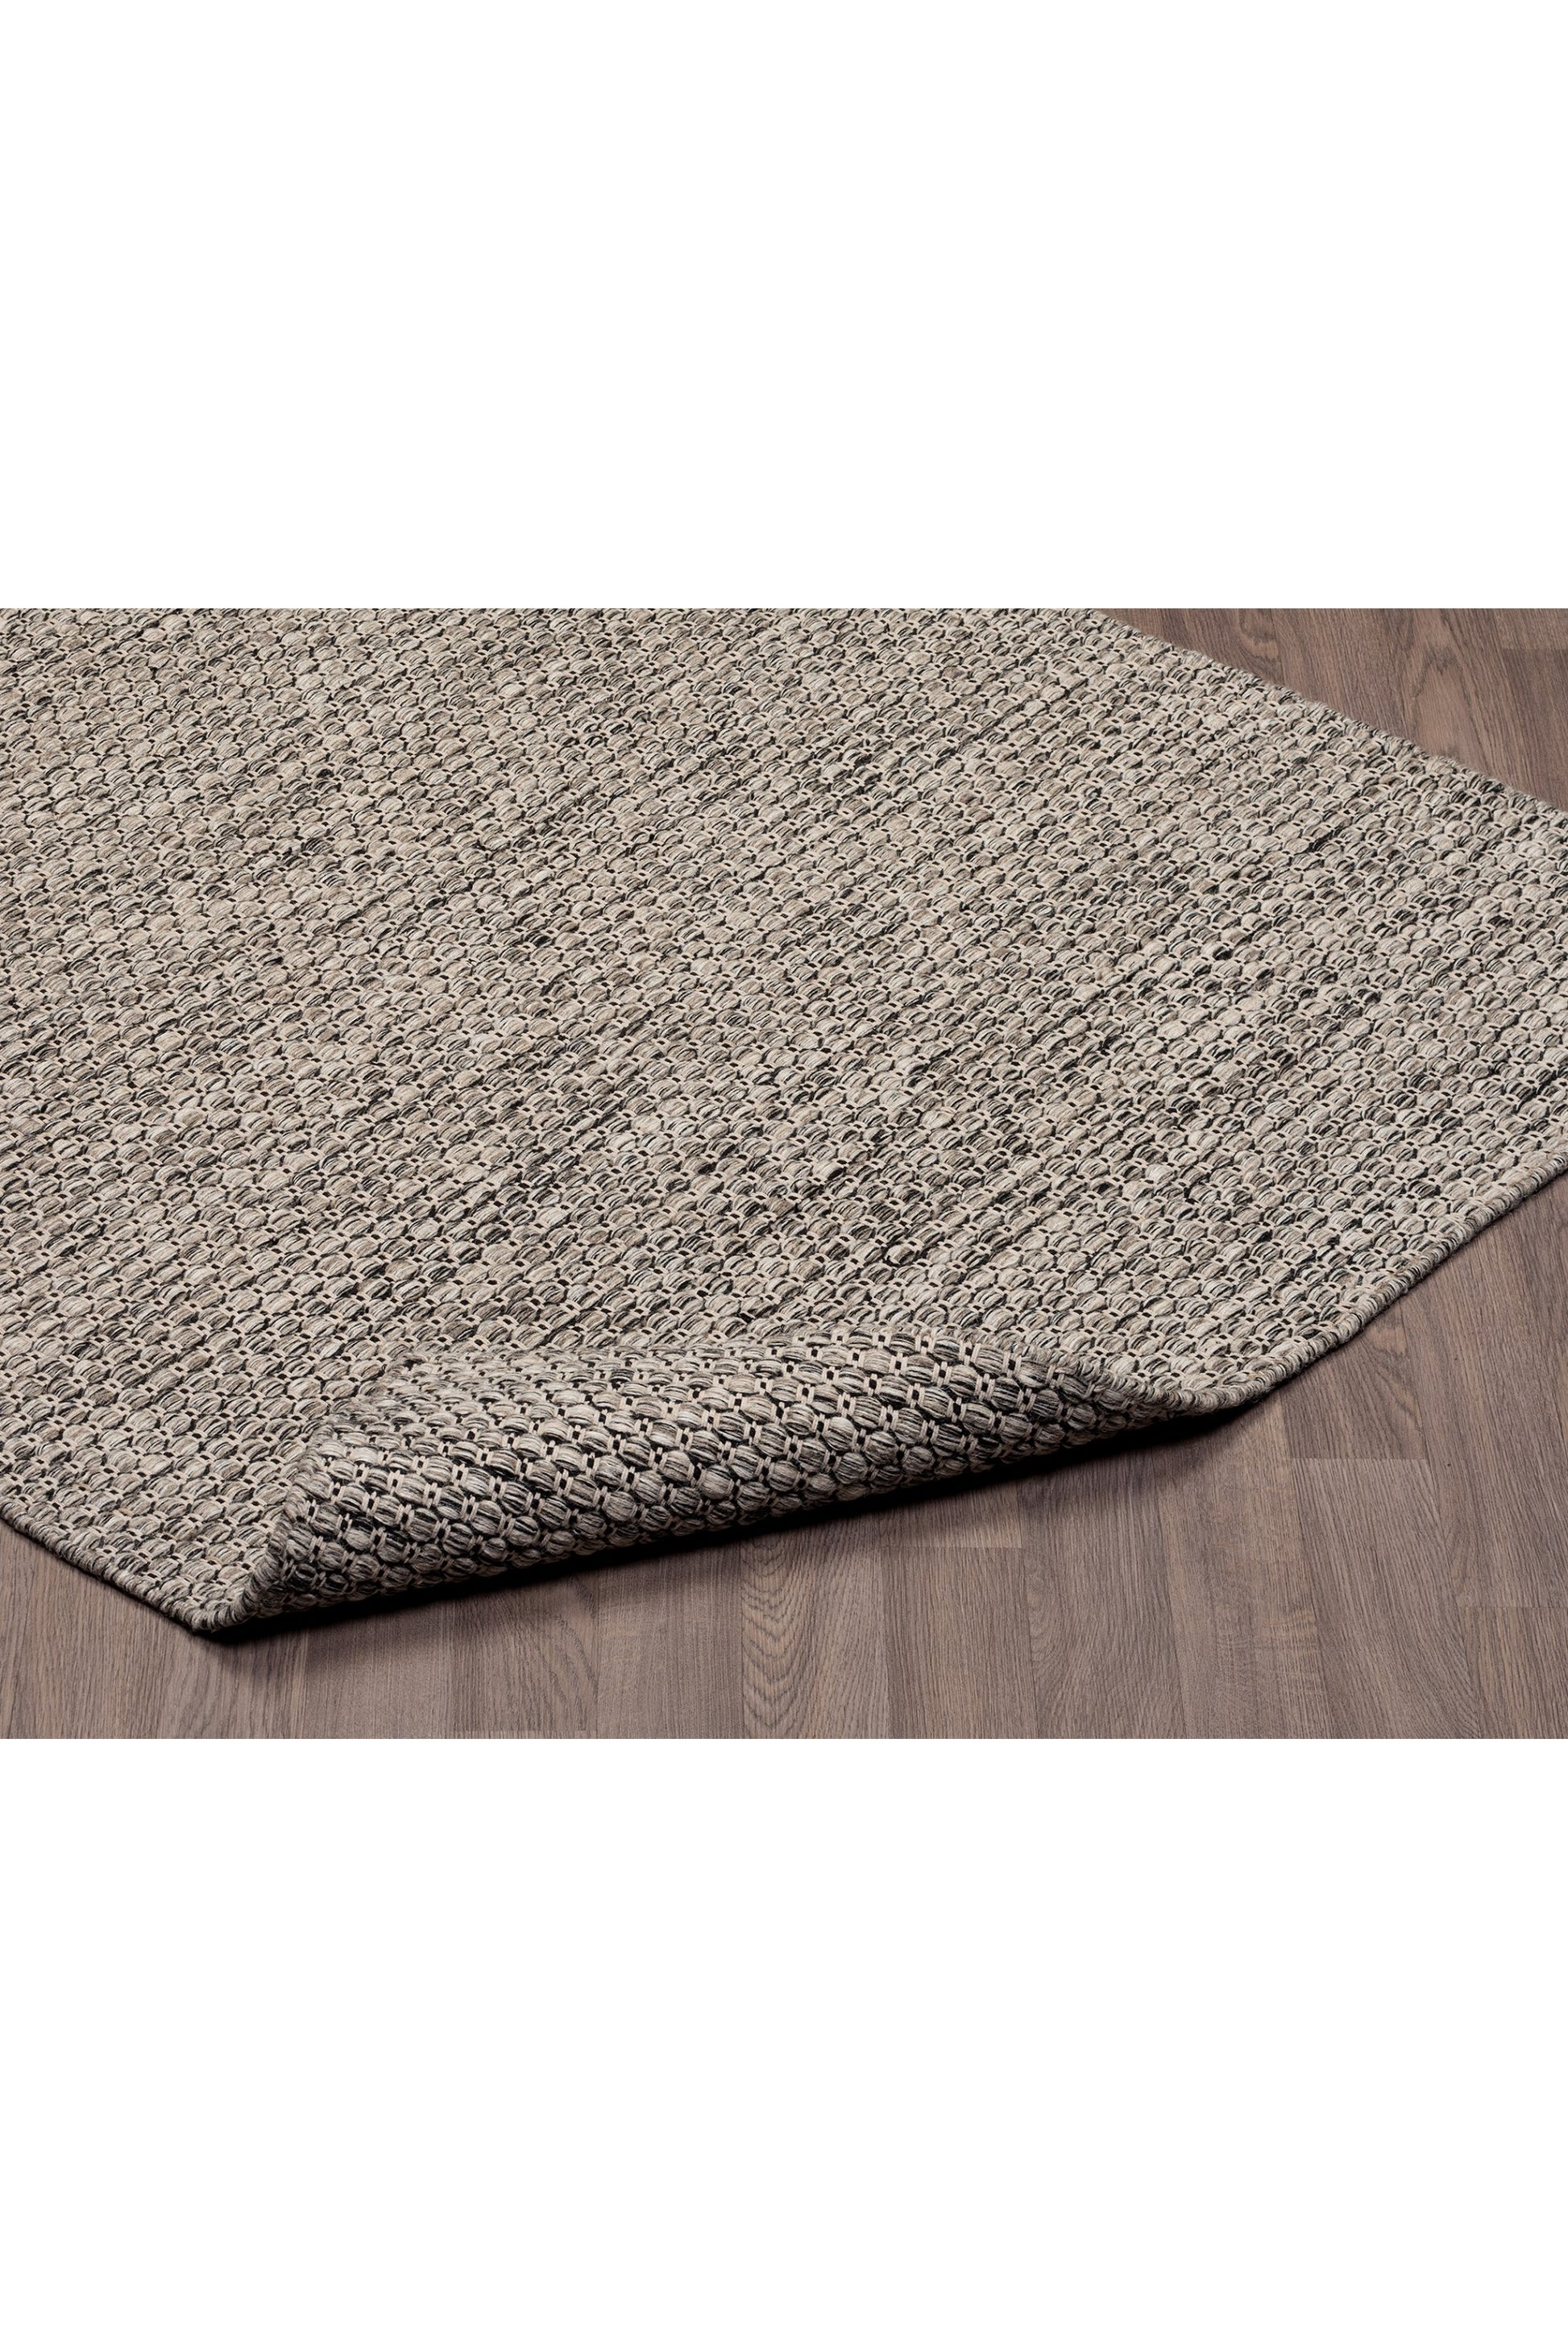 Handmade Natural Reversible Wool Rug - Erbanica